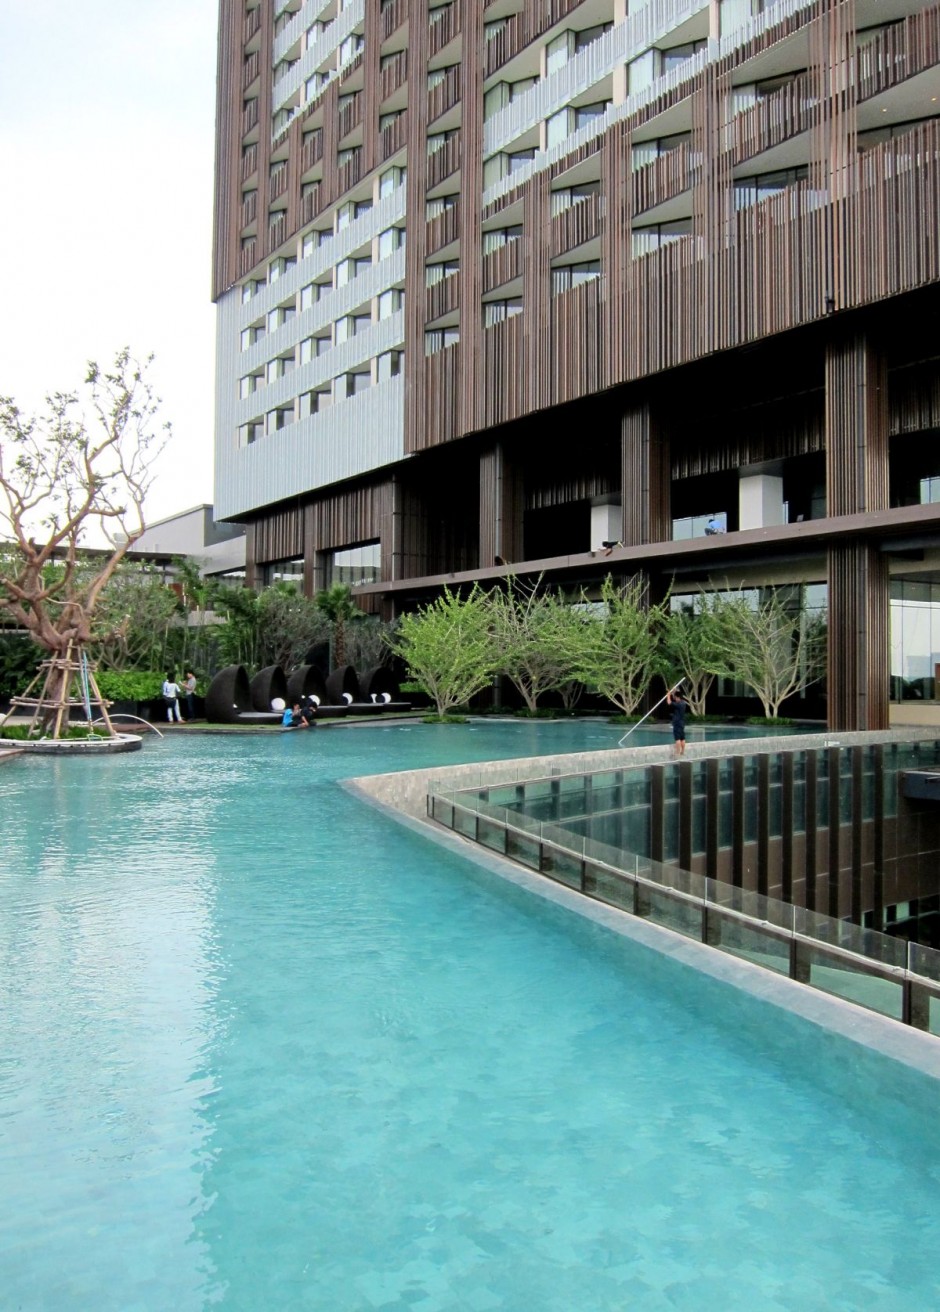 A212: HOTEL: Hilton Pattaya, Thailand by TROP